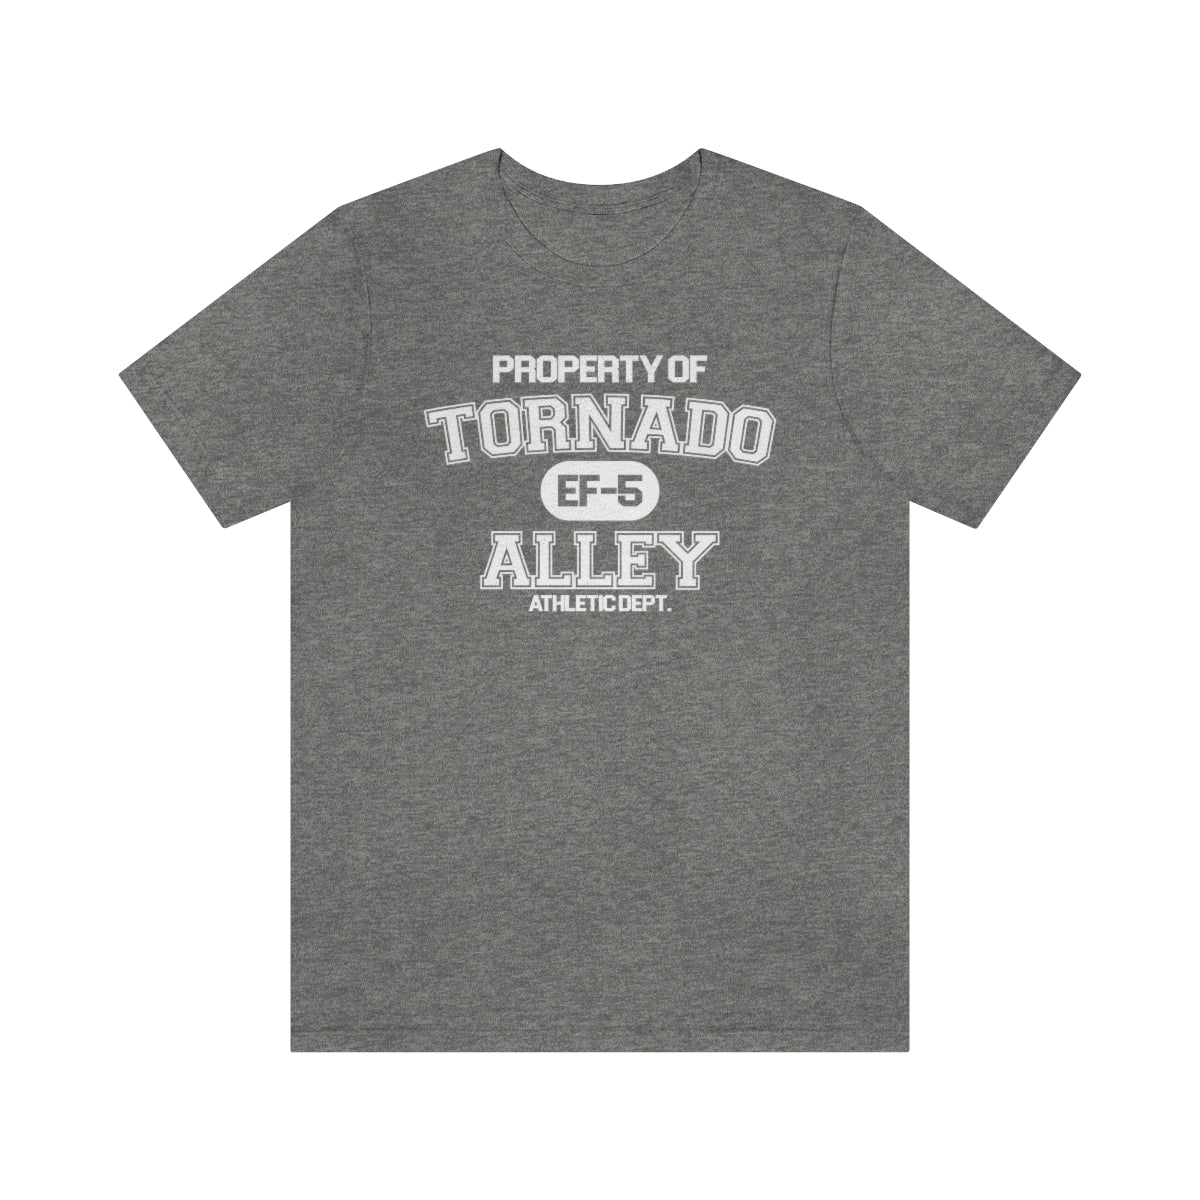 Tornado Alley Athletic Dept. Tee 